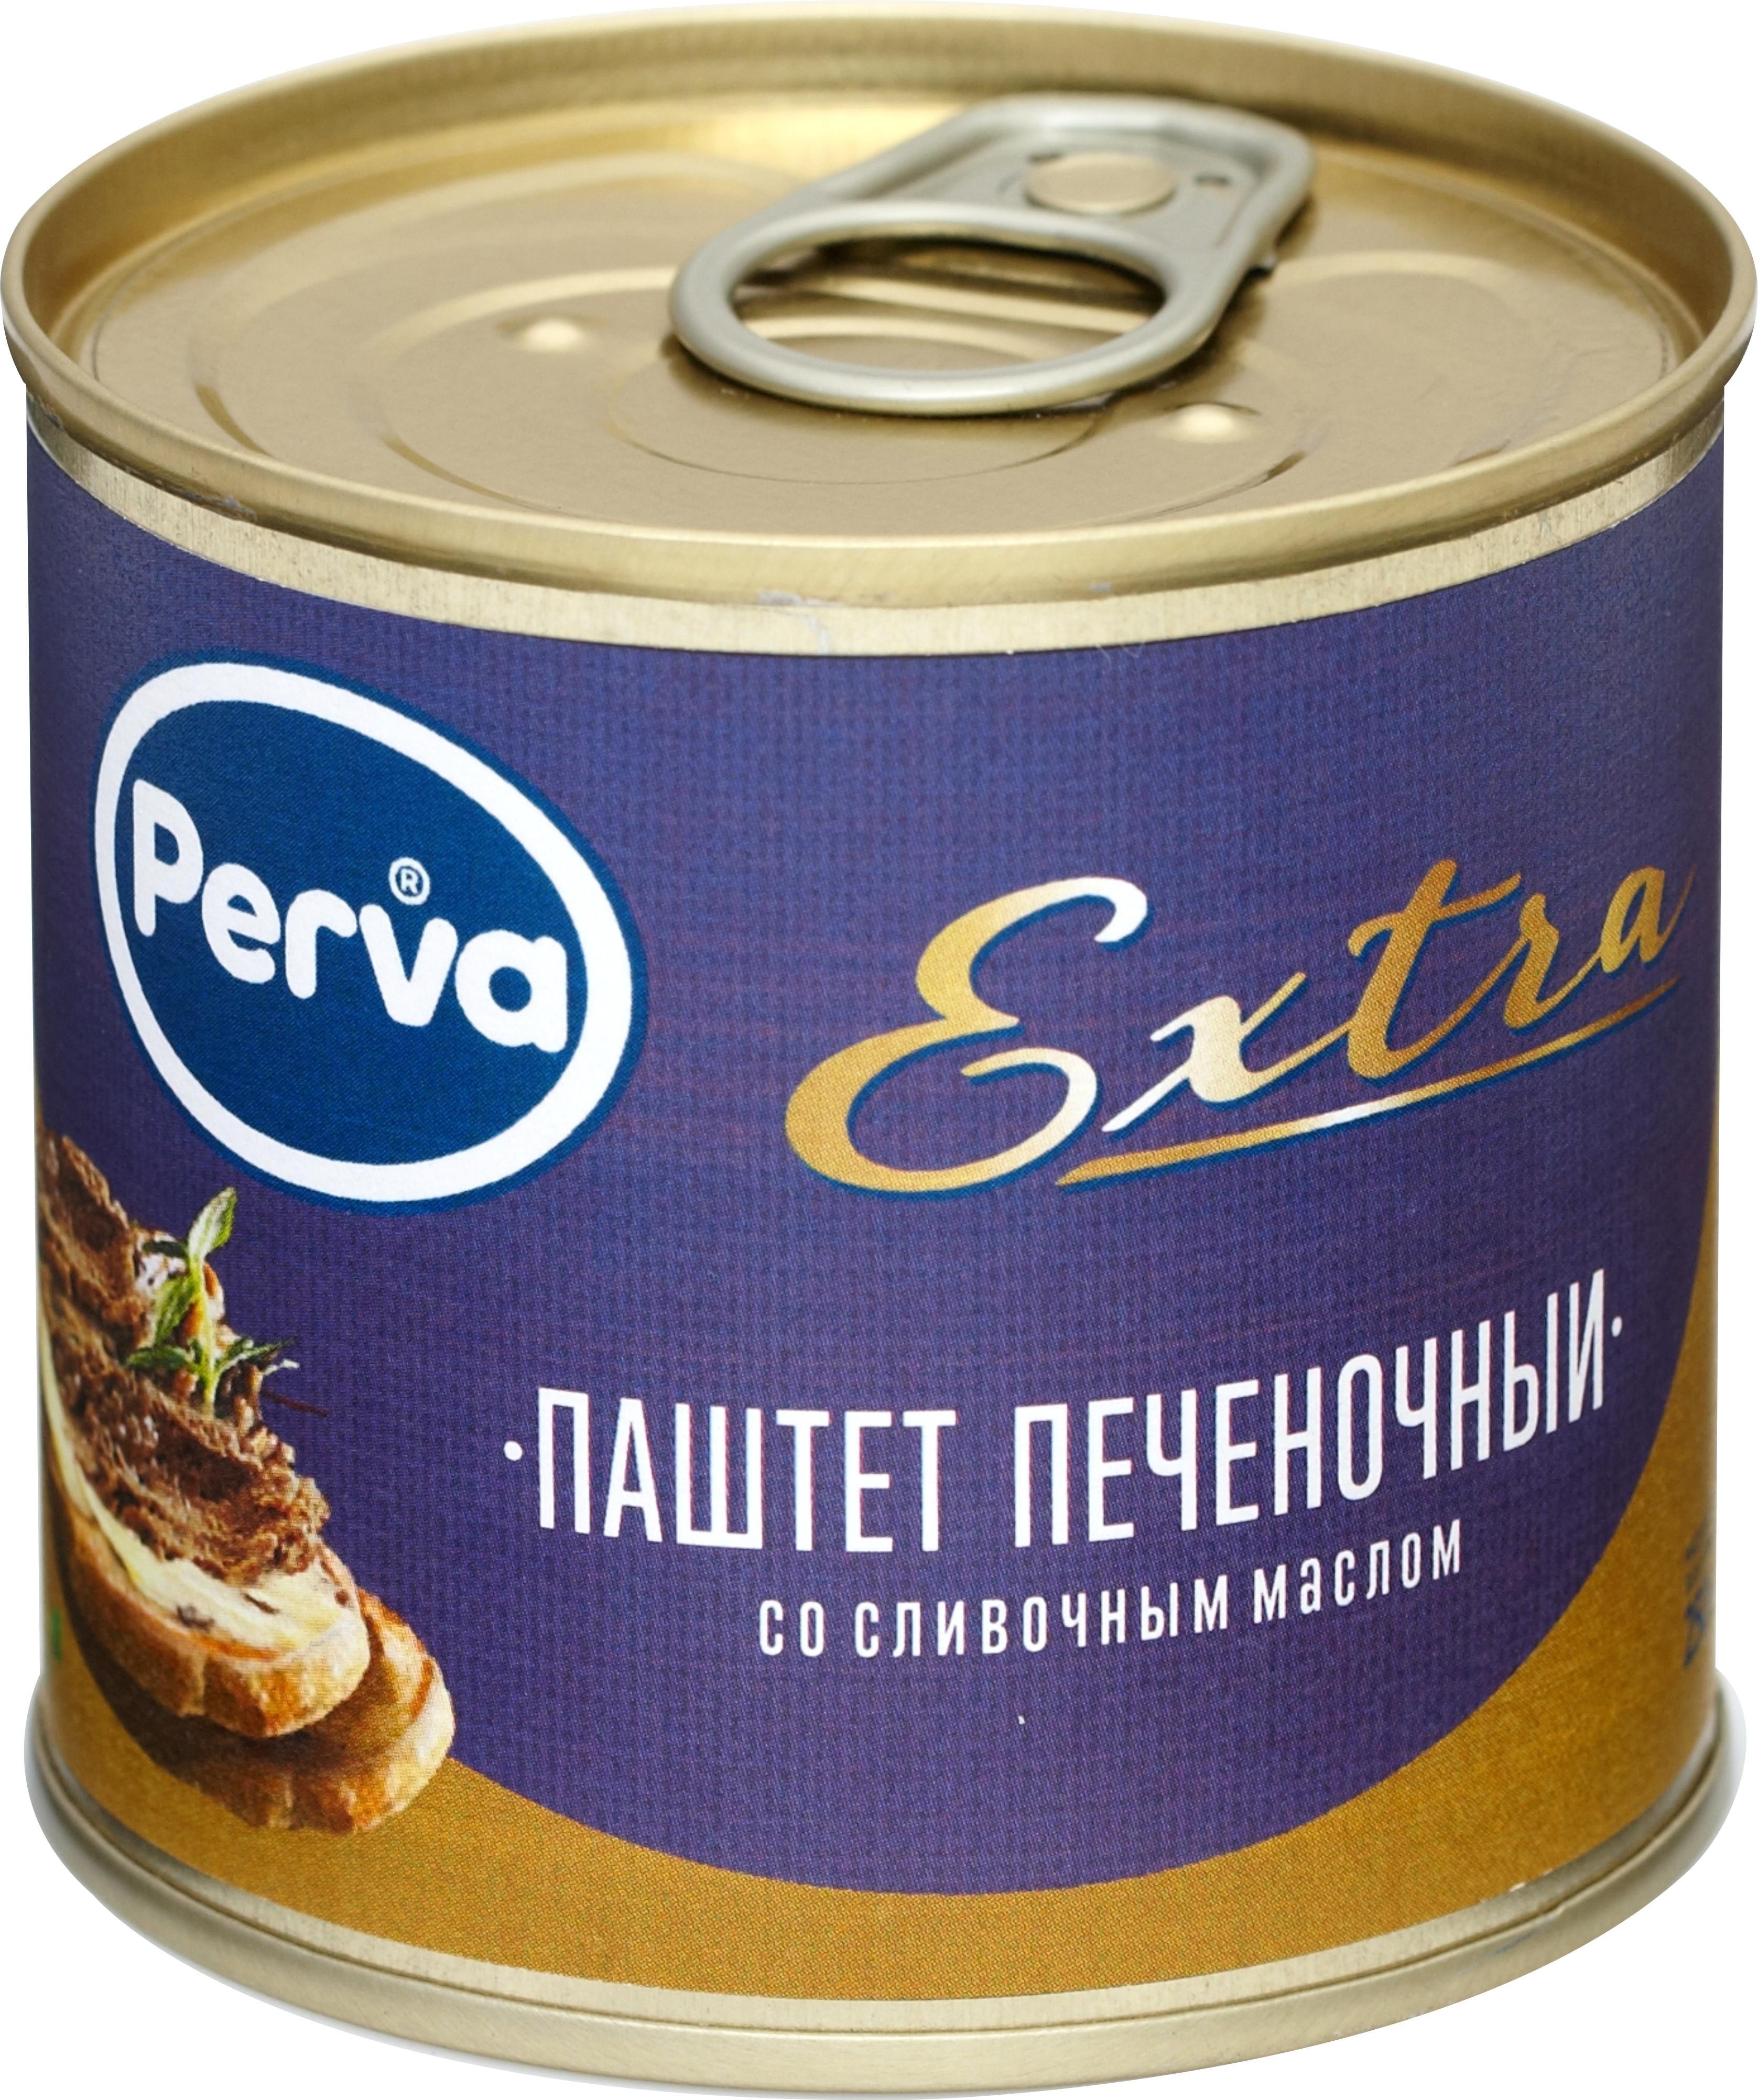 Паштет КМК Печёночный слив/масло Perva Extra, 250 гр., ж/б